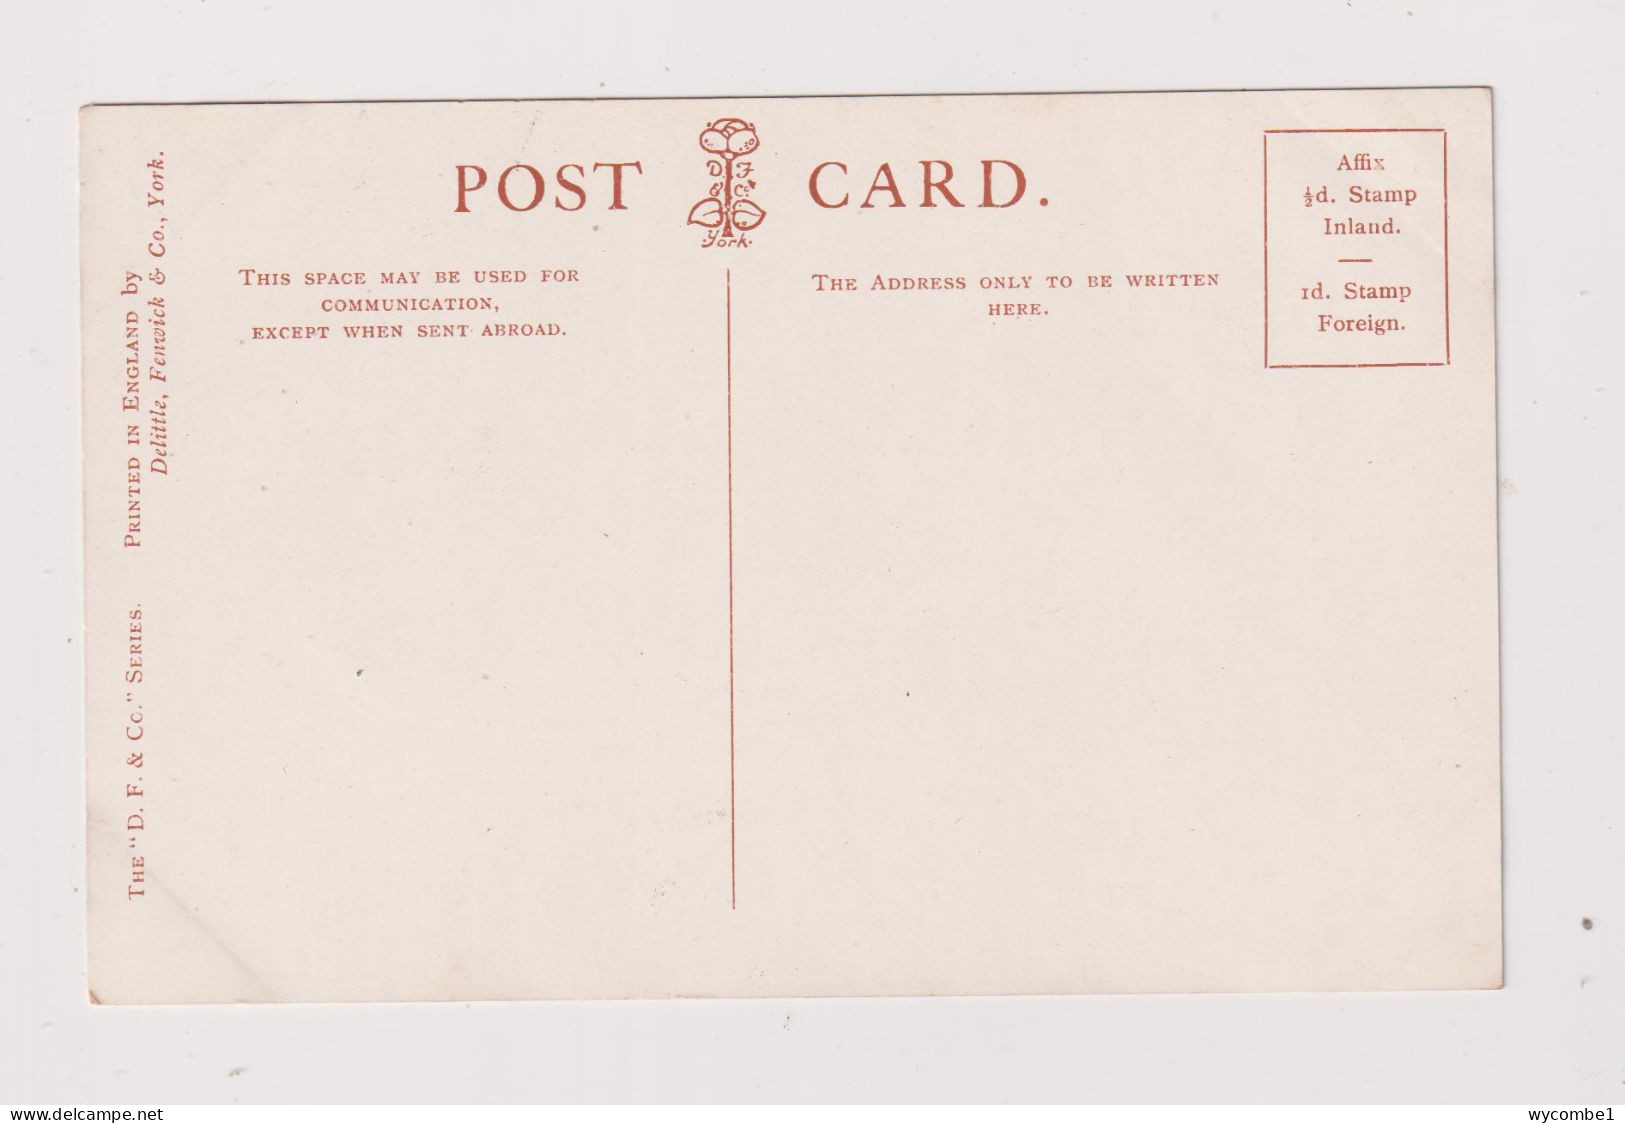 ENGLAND - Birmingham Highbury Chamberlains Residence The Hall Unused Vintage Postcard - Birmingham